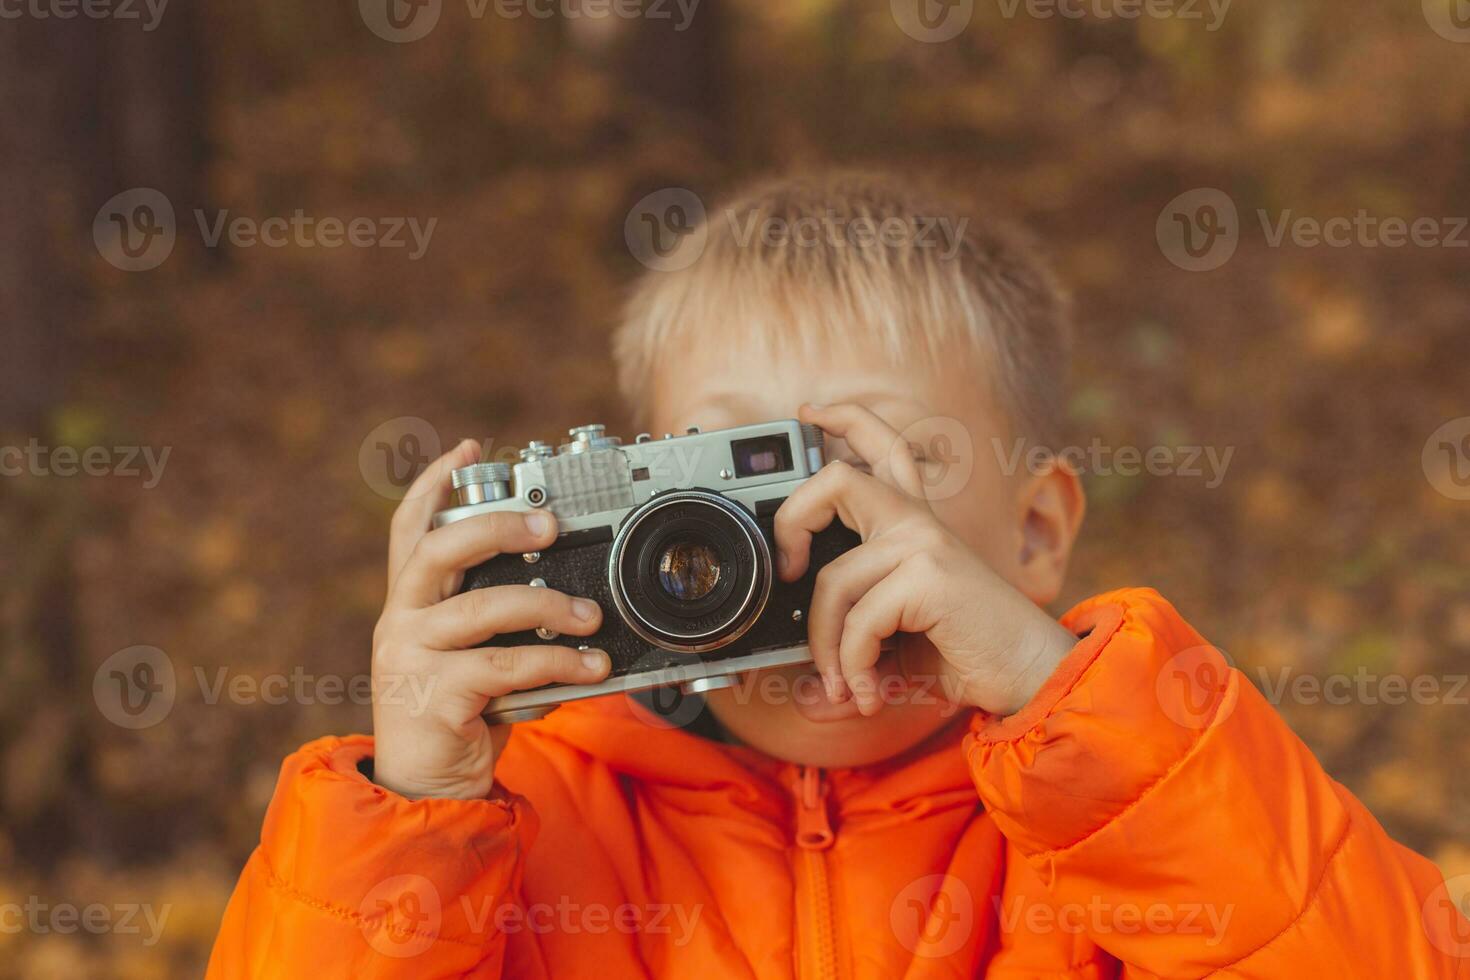 jongen met retro camera nemen afbeeldingen buitenshuis in herfst natuur. vrije tijd en fotografen concept foto